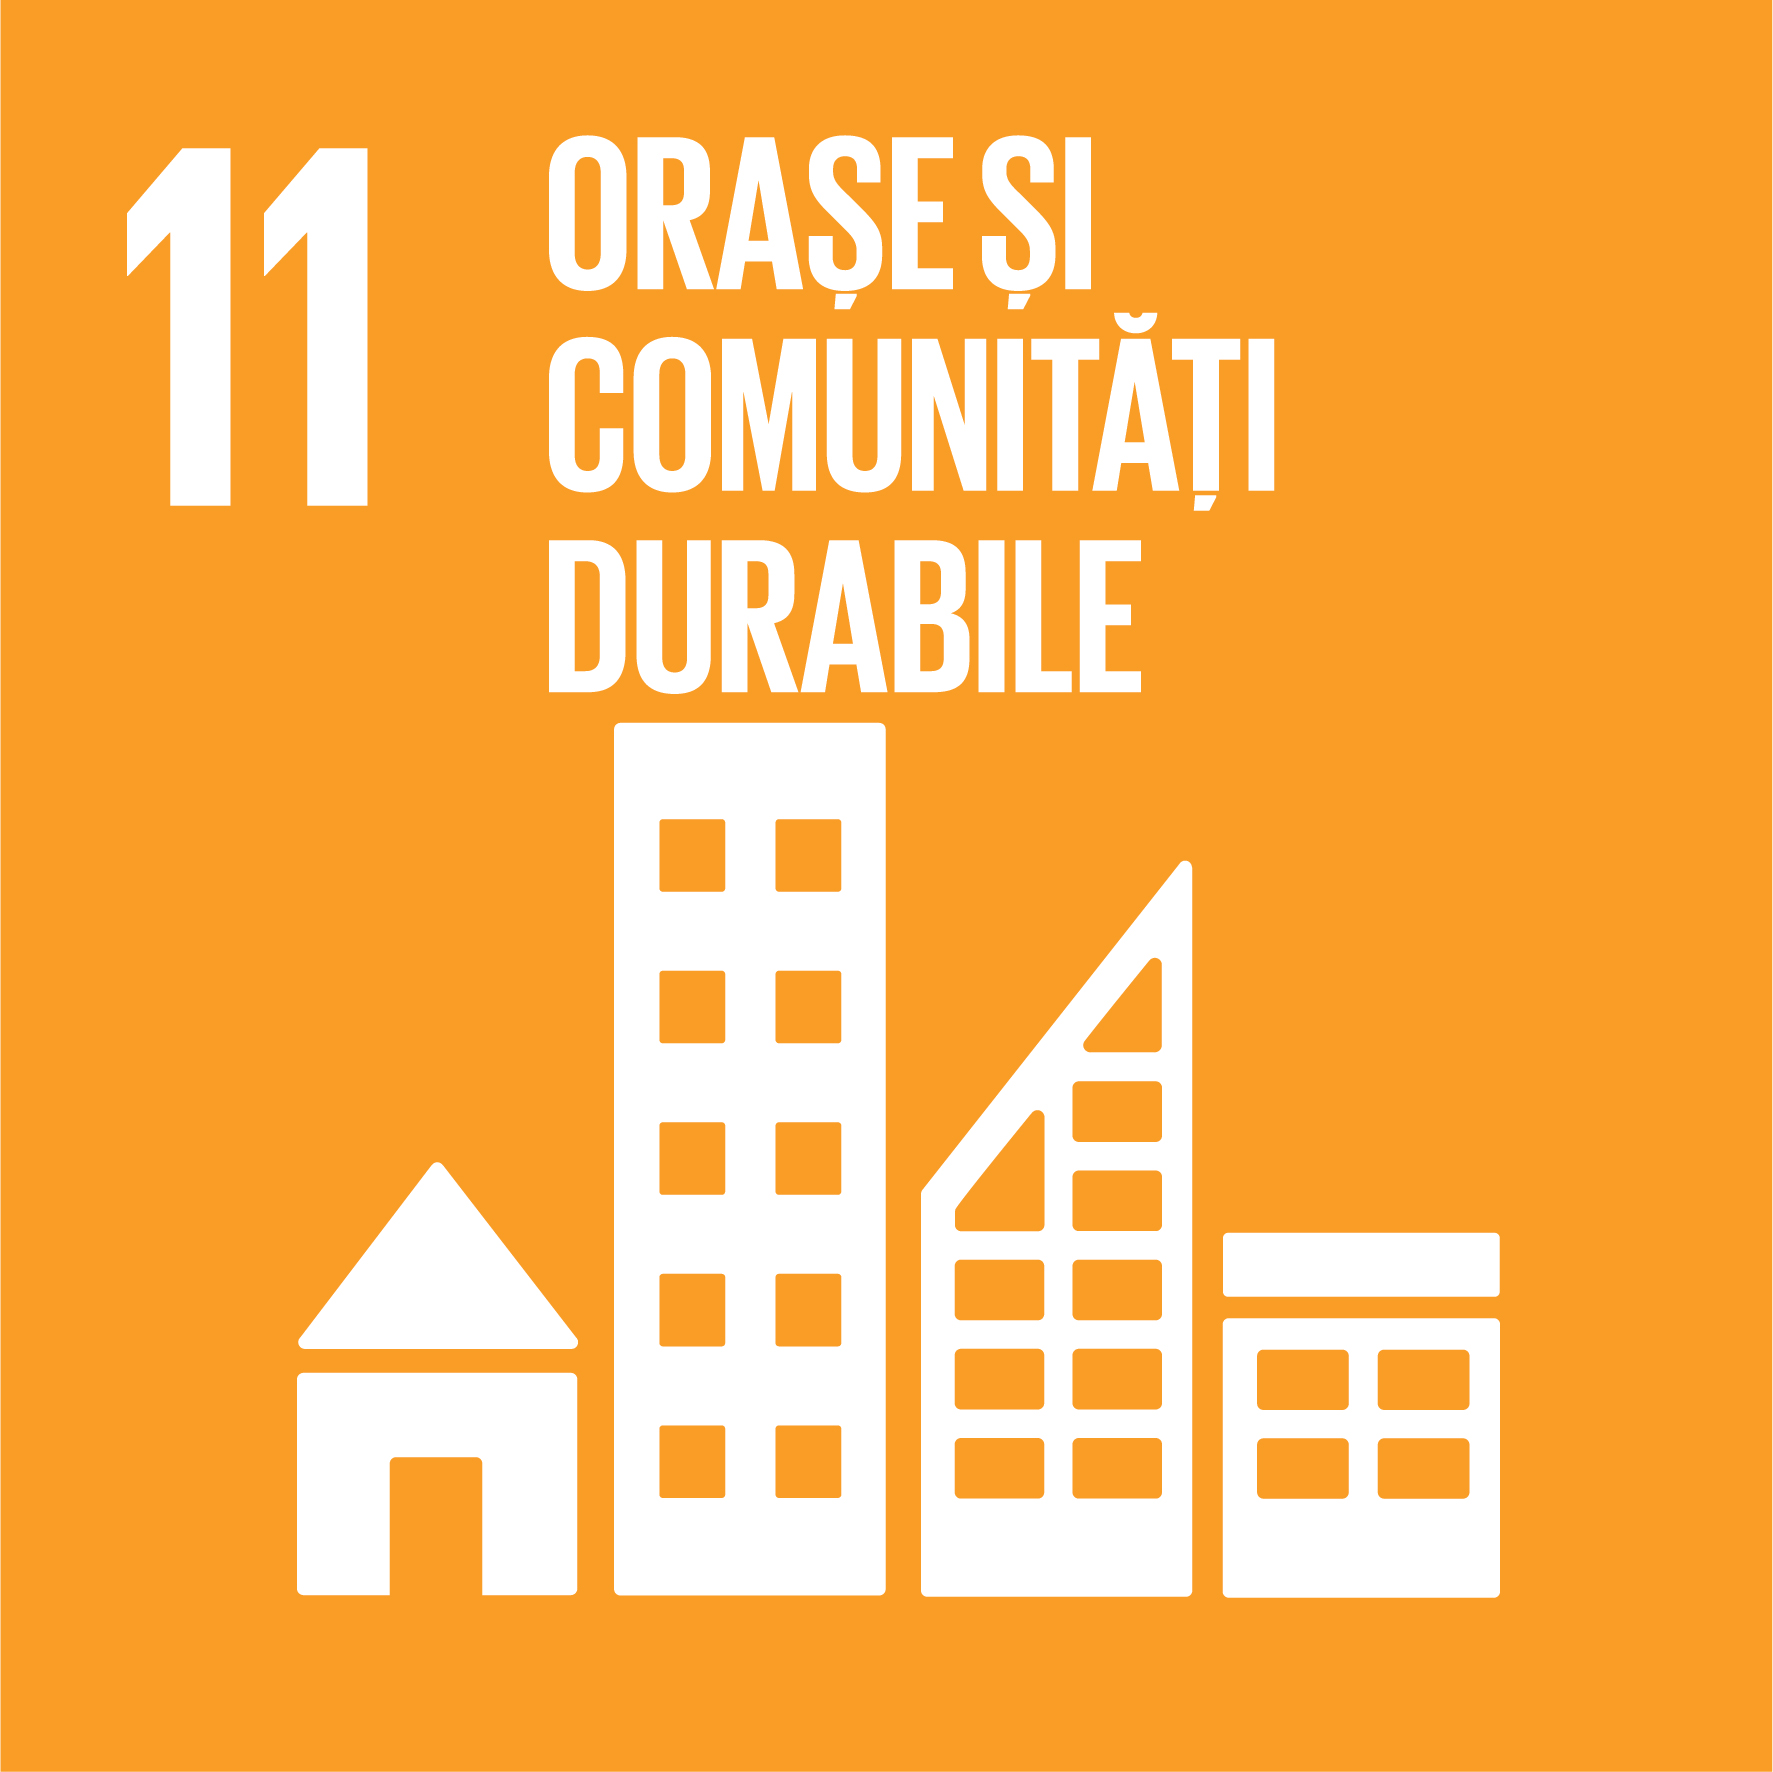 Orașe și comunități durabile - Obiectiv 11